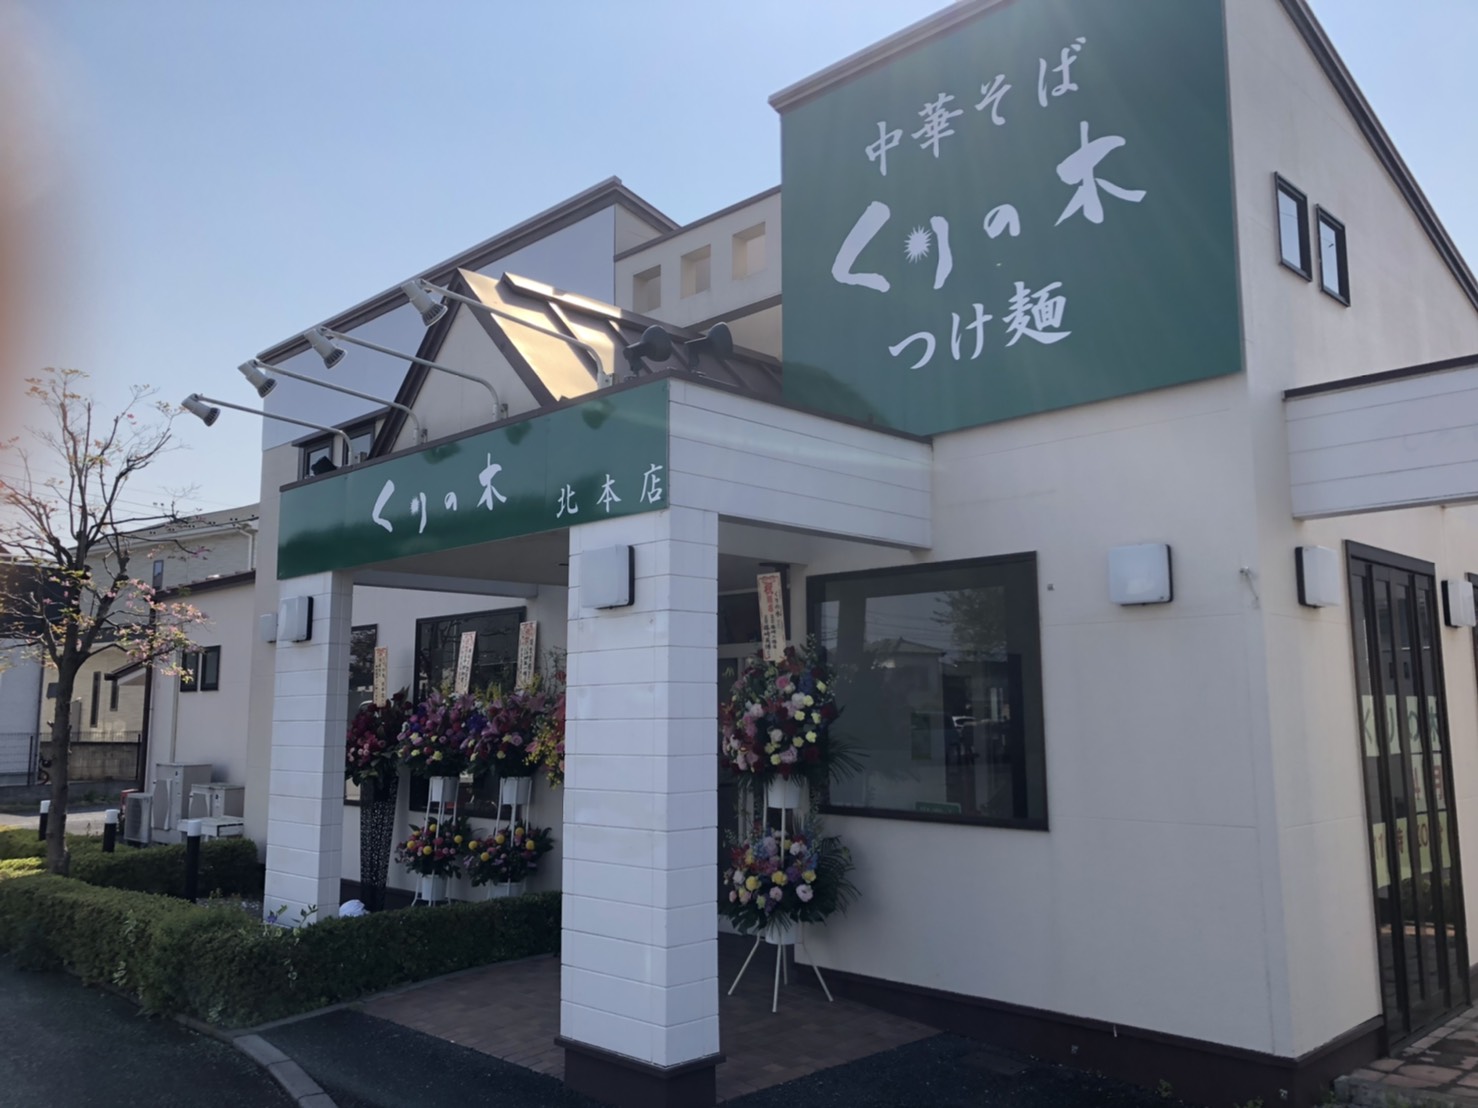 「埼玉×有名ラーメン店」店舗改装工事|シンプルで気取らない外観